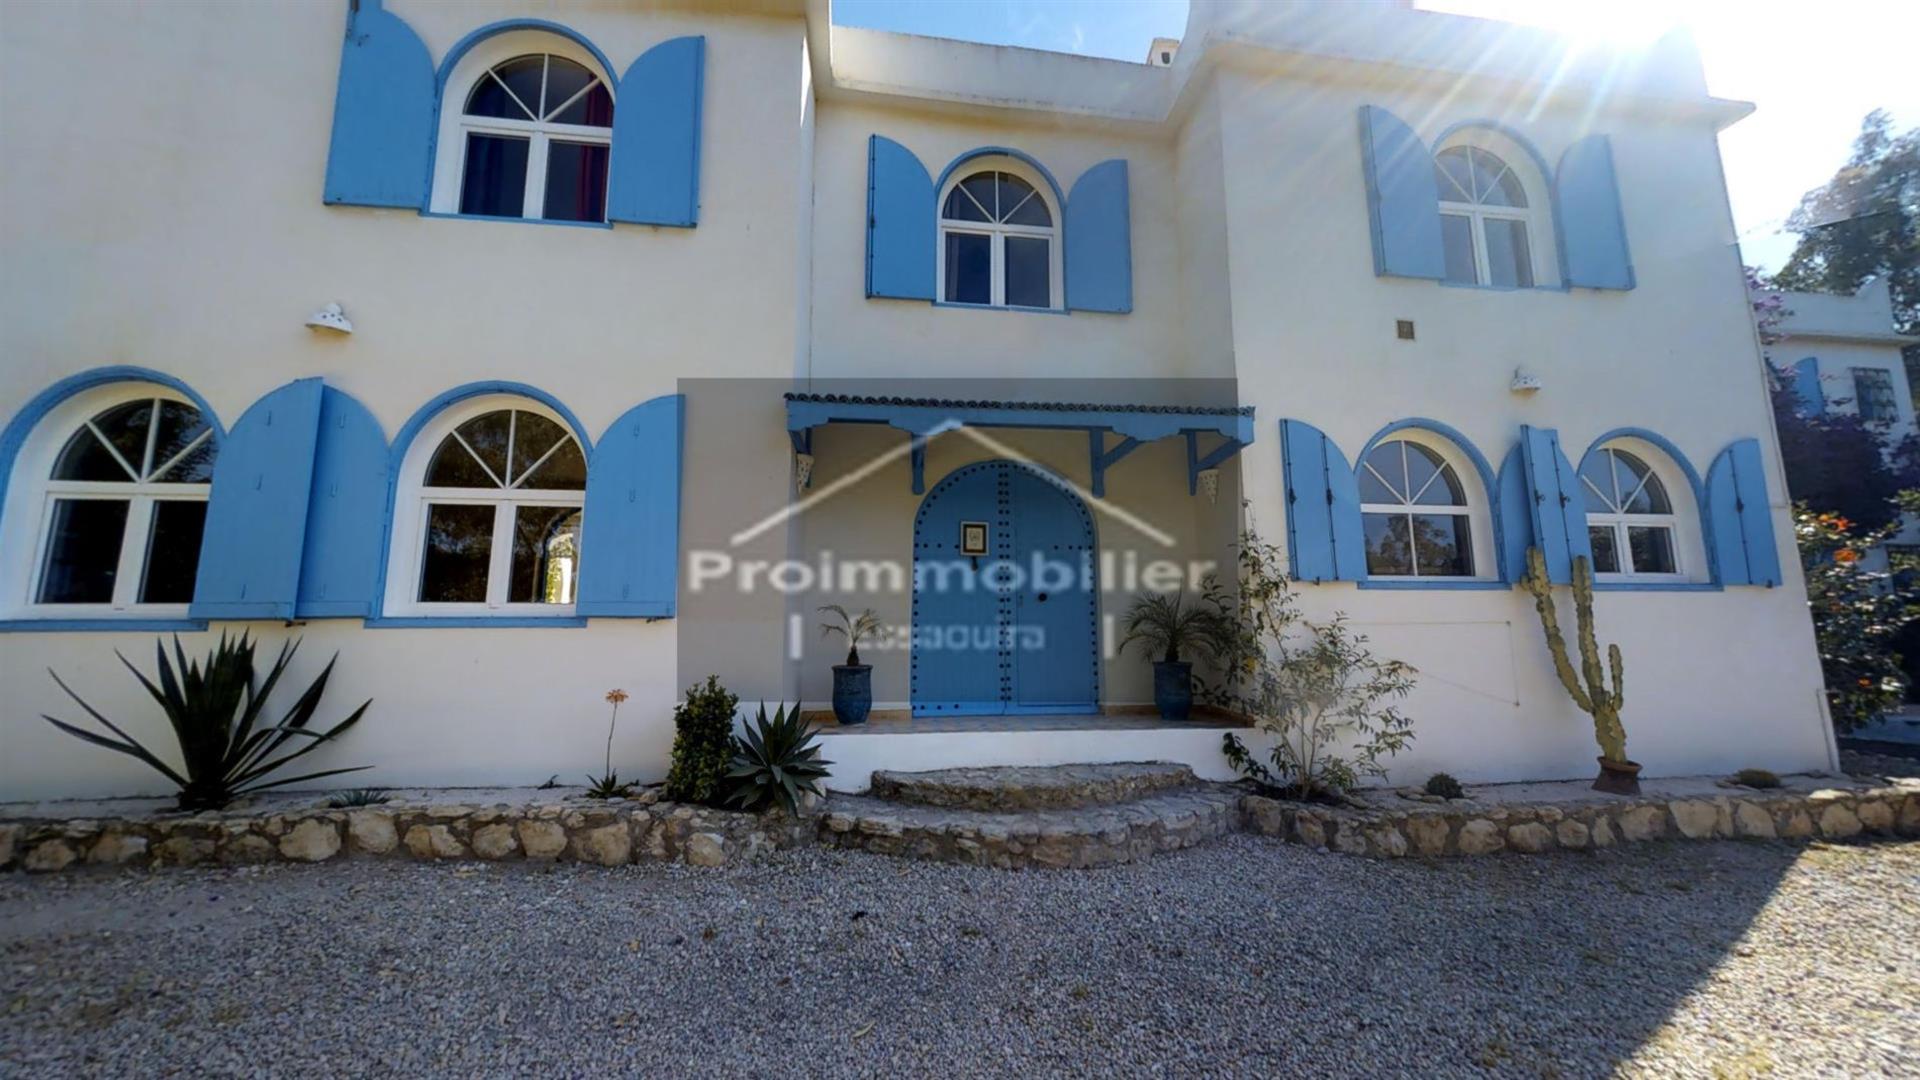 24-04-03-VMH Mooi gastenverblijf van 750 m²te koop in Essaouira Tuin 4989m²